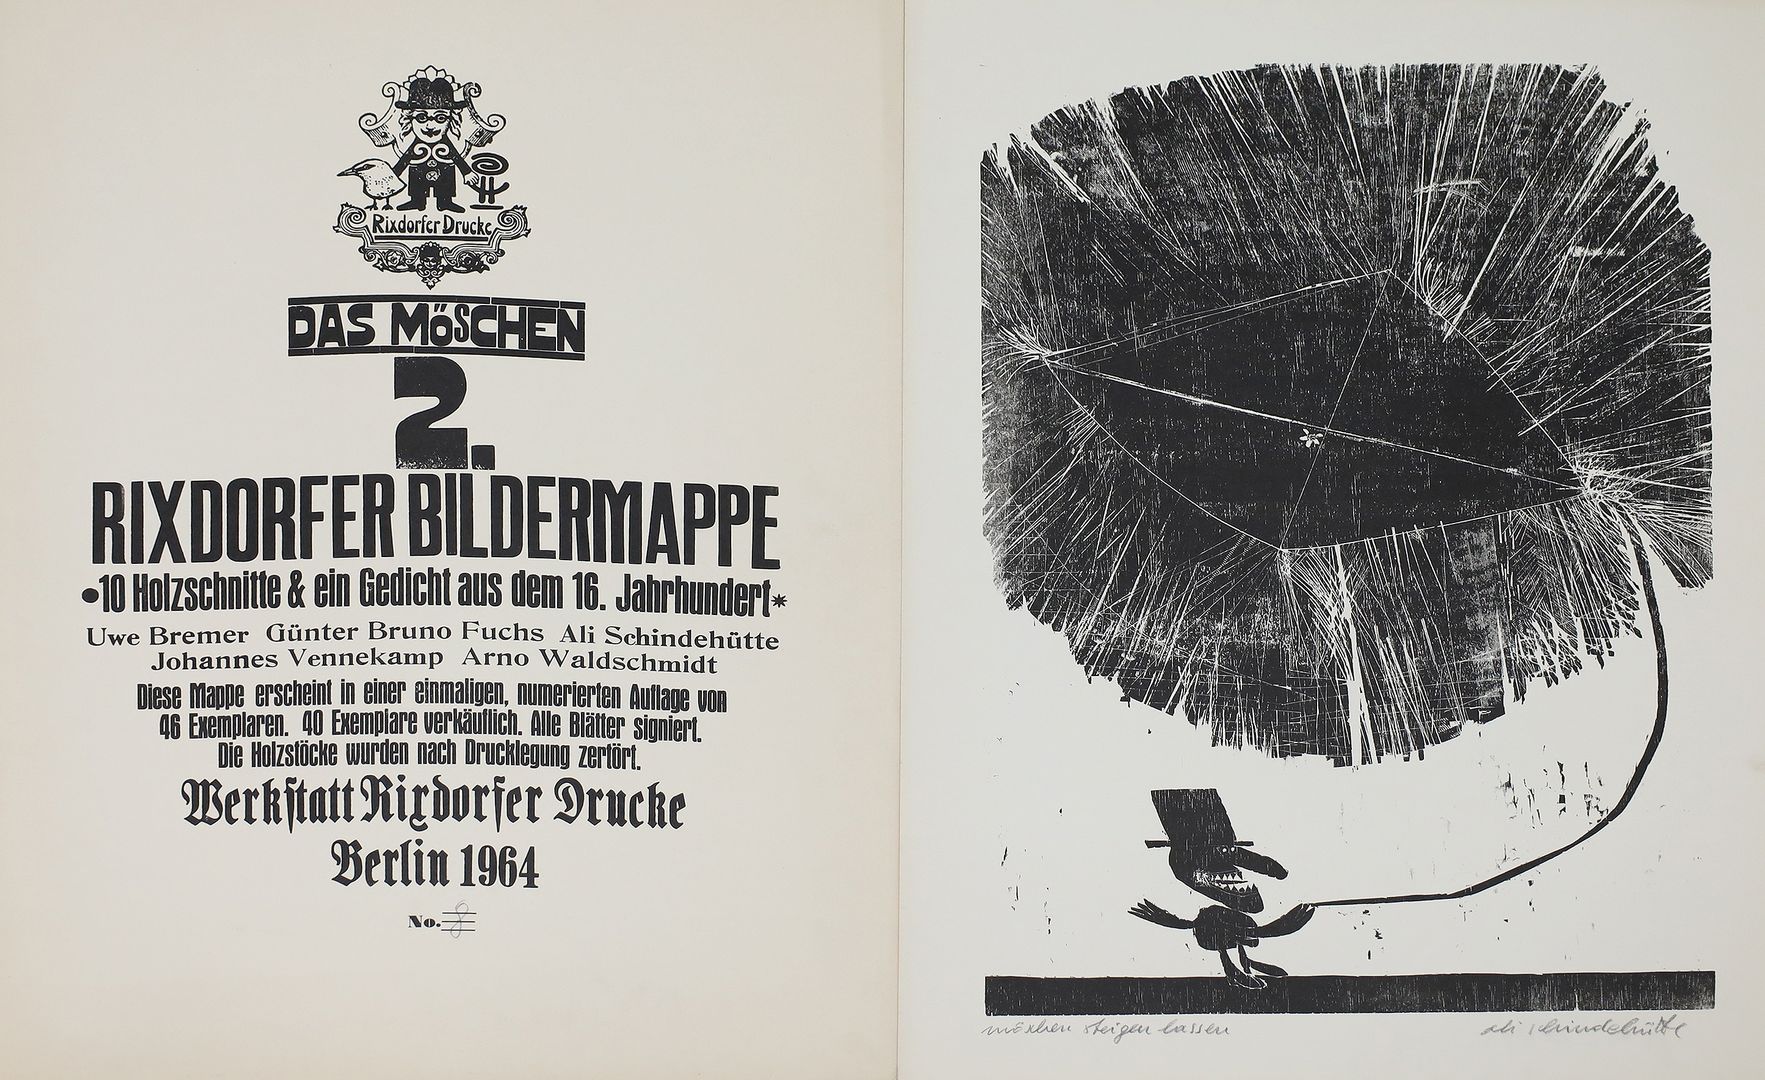 Künstlermappe "Rixdorfer Bildermappe", 1964